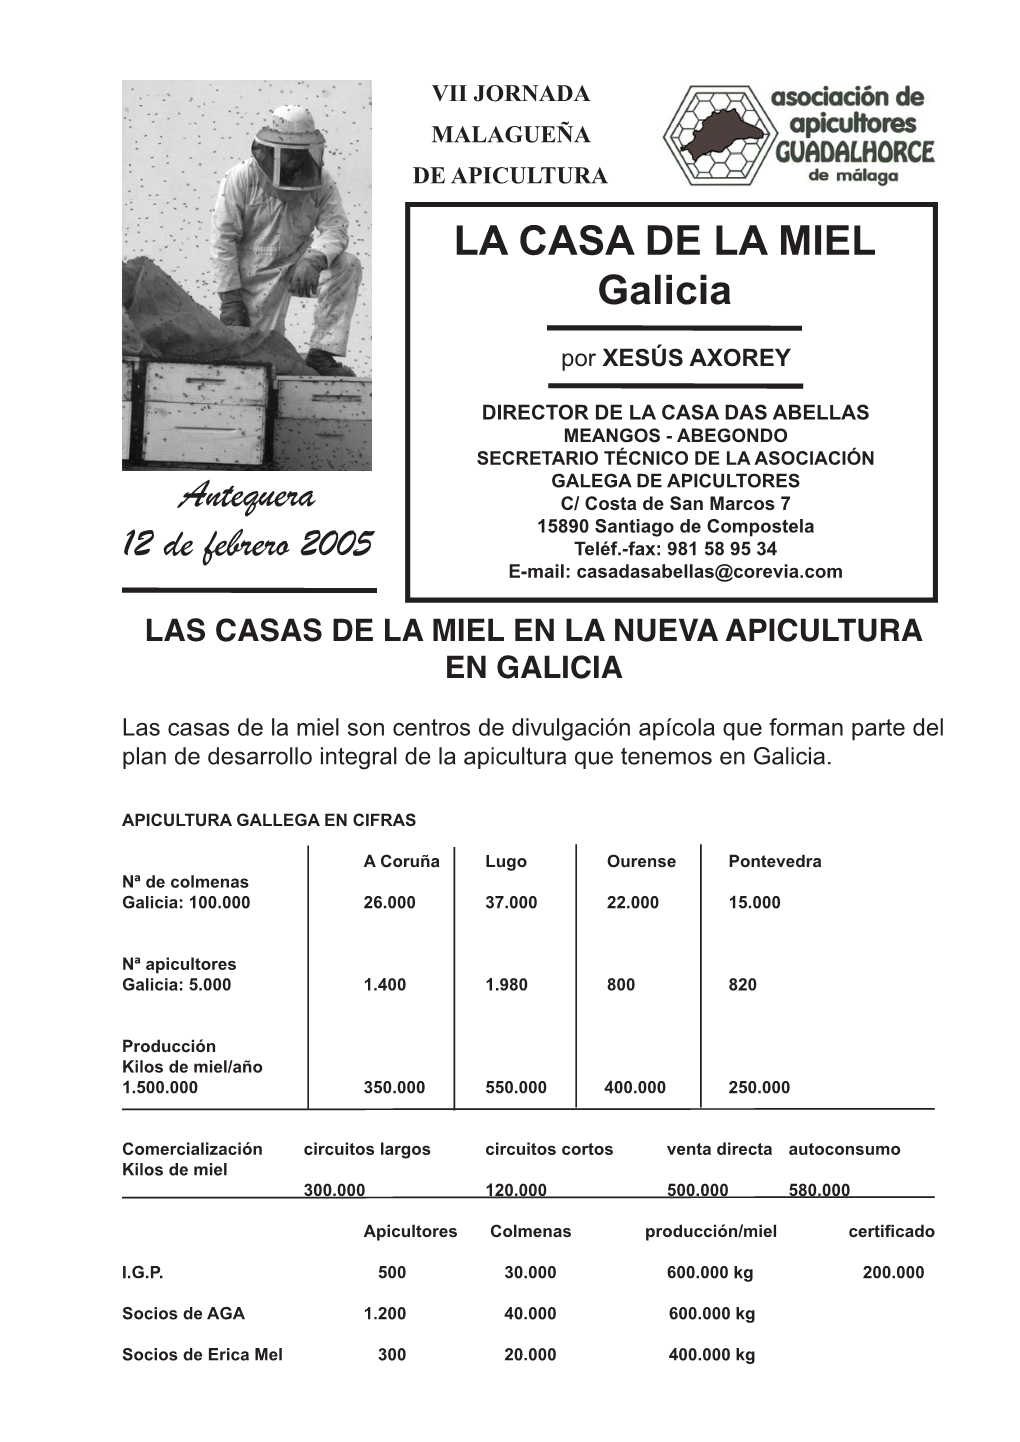 LA CASA DE LA MIEL Galicia Antequera 12 De Febrero 2005